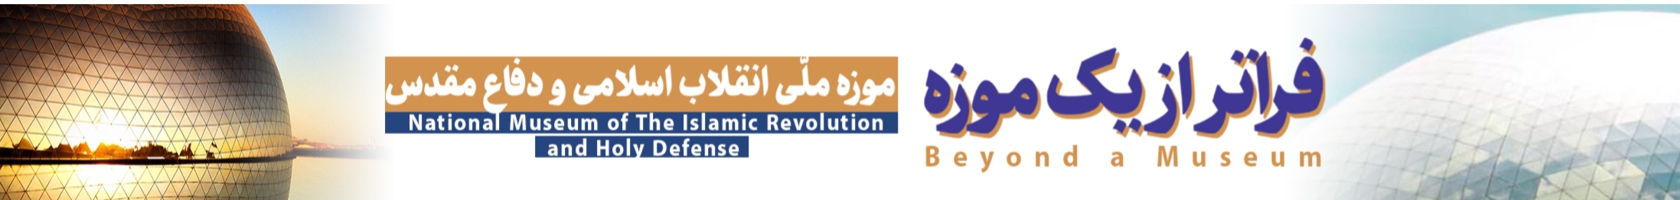  موزه ملی انقلاب اسلامی و دفاع مقدس